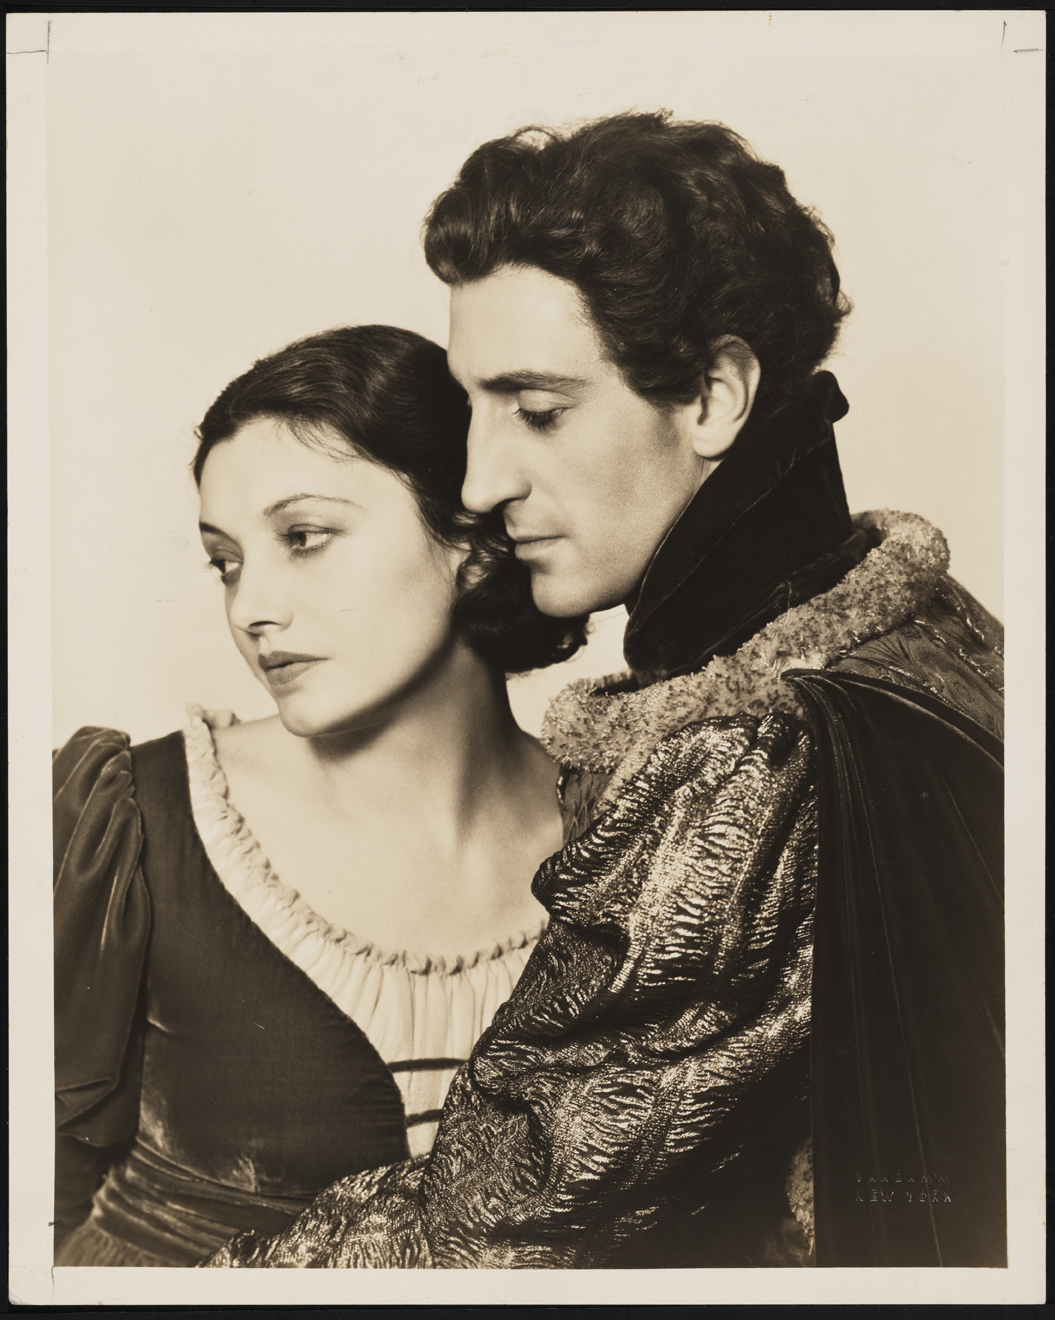 Vandamm. [Katharine Cornell and Basil Rathbone.] 1934. Museum of the City of New York. 35.169.3